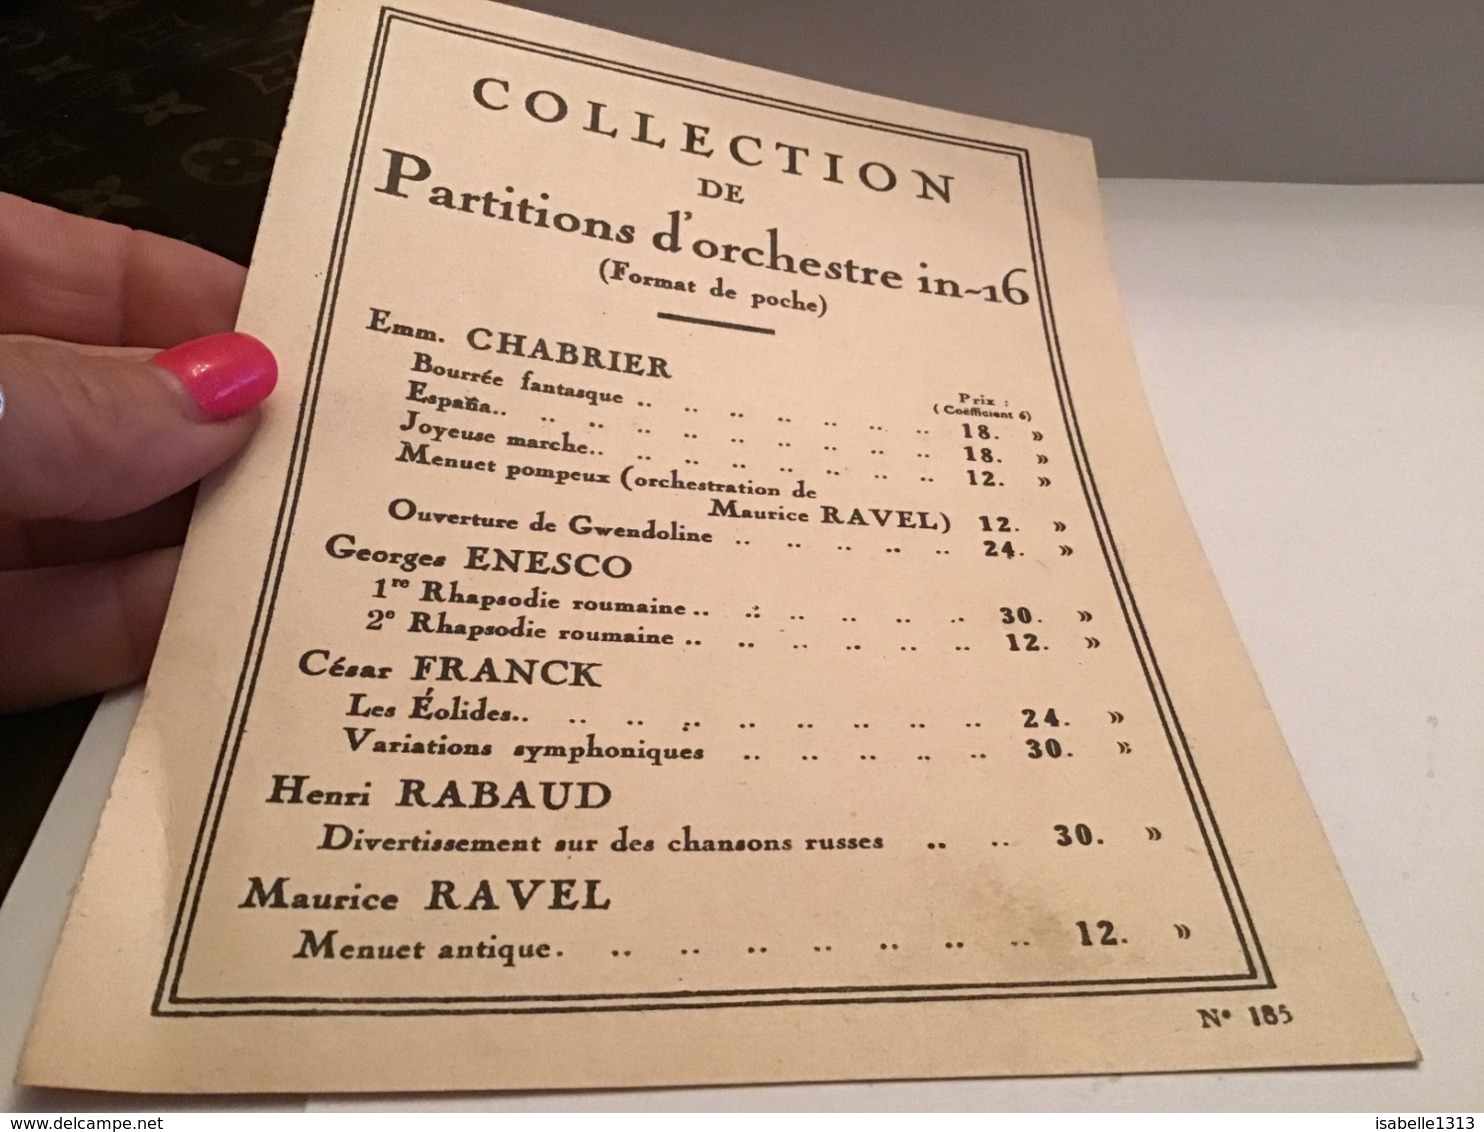 Collection De Partition D’orchestre Format De Poche Une Feuille Ravel Chabrier - Non Classés